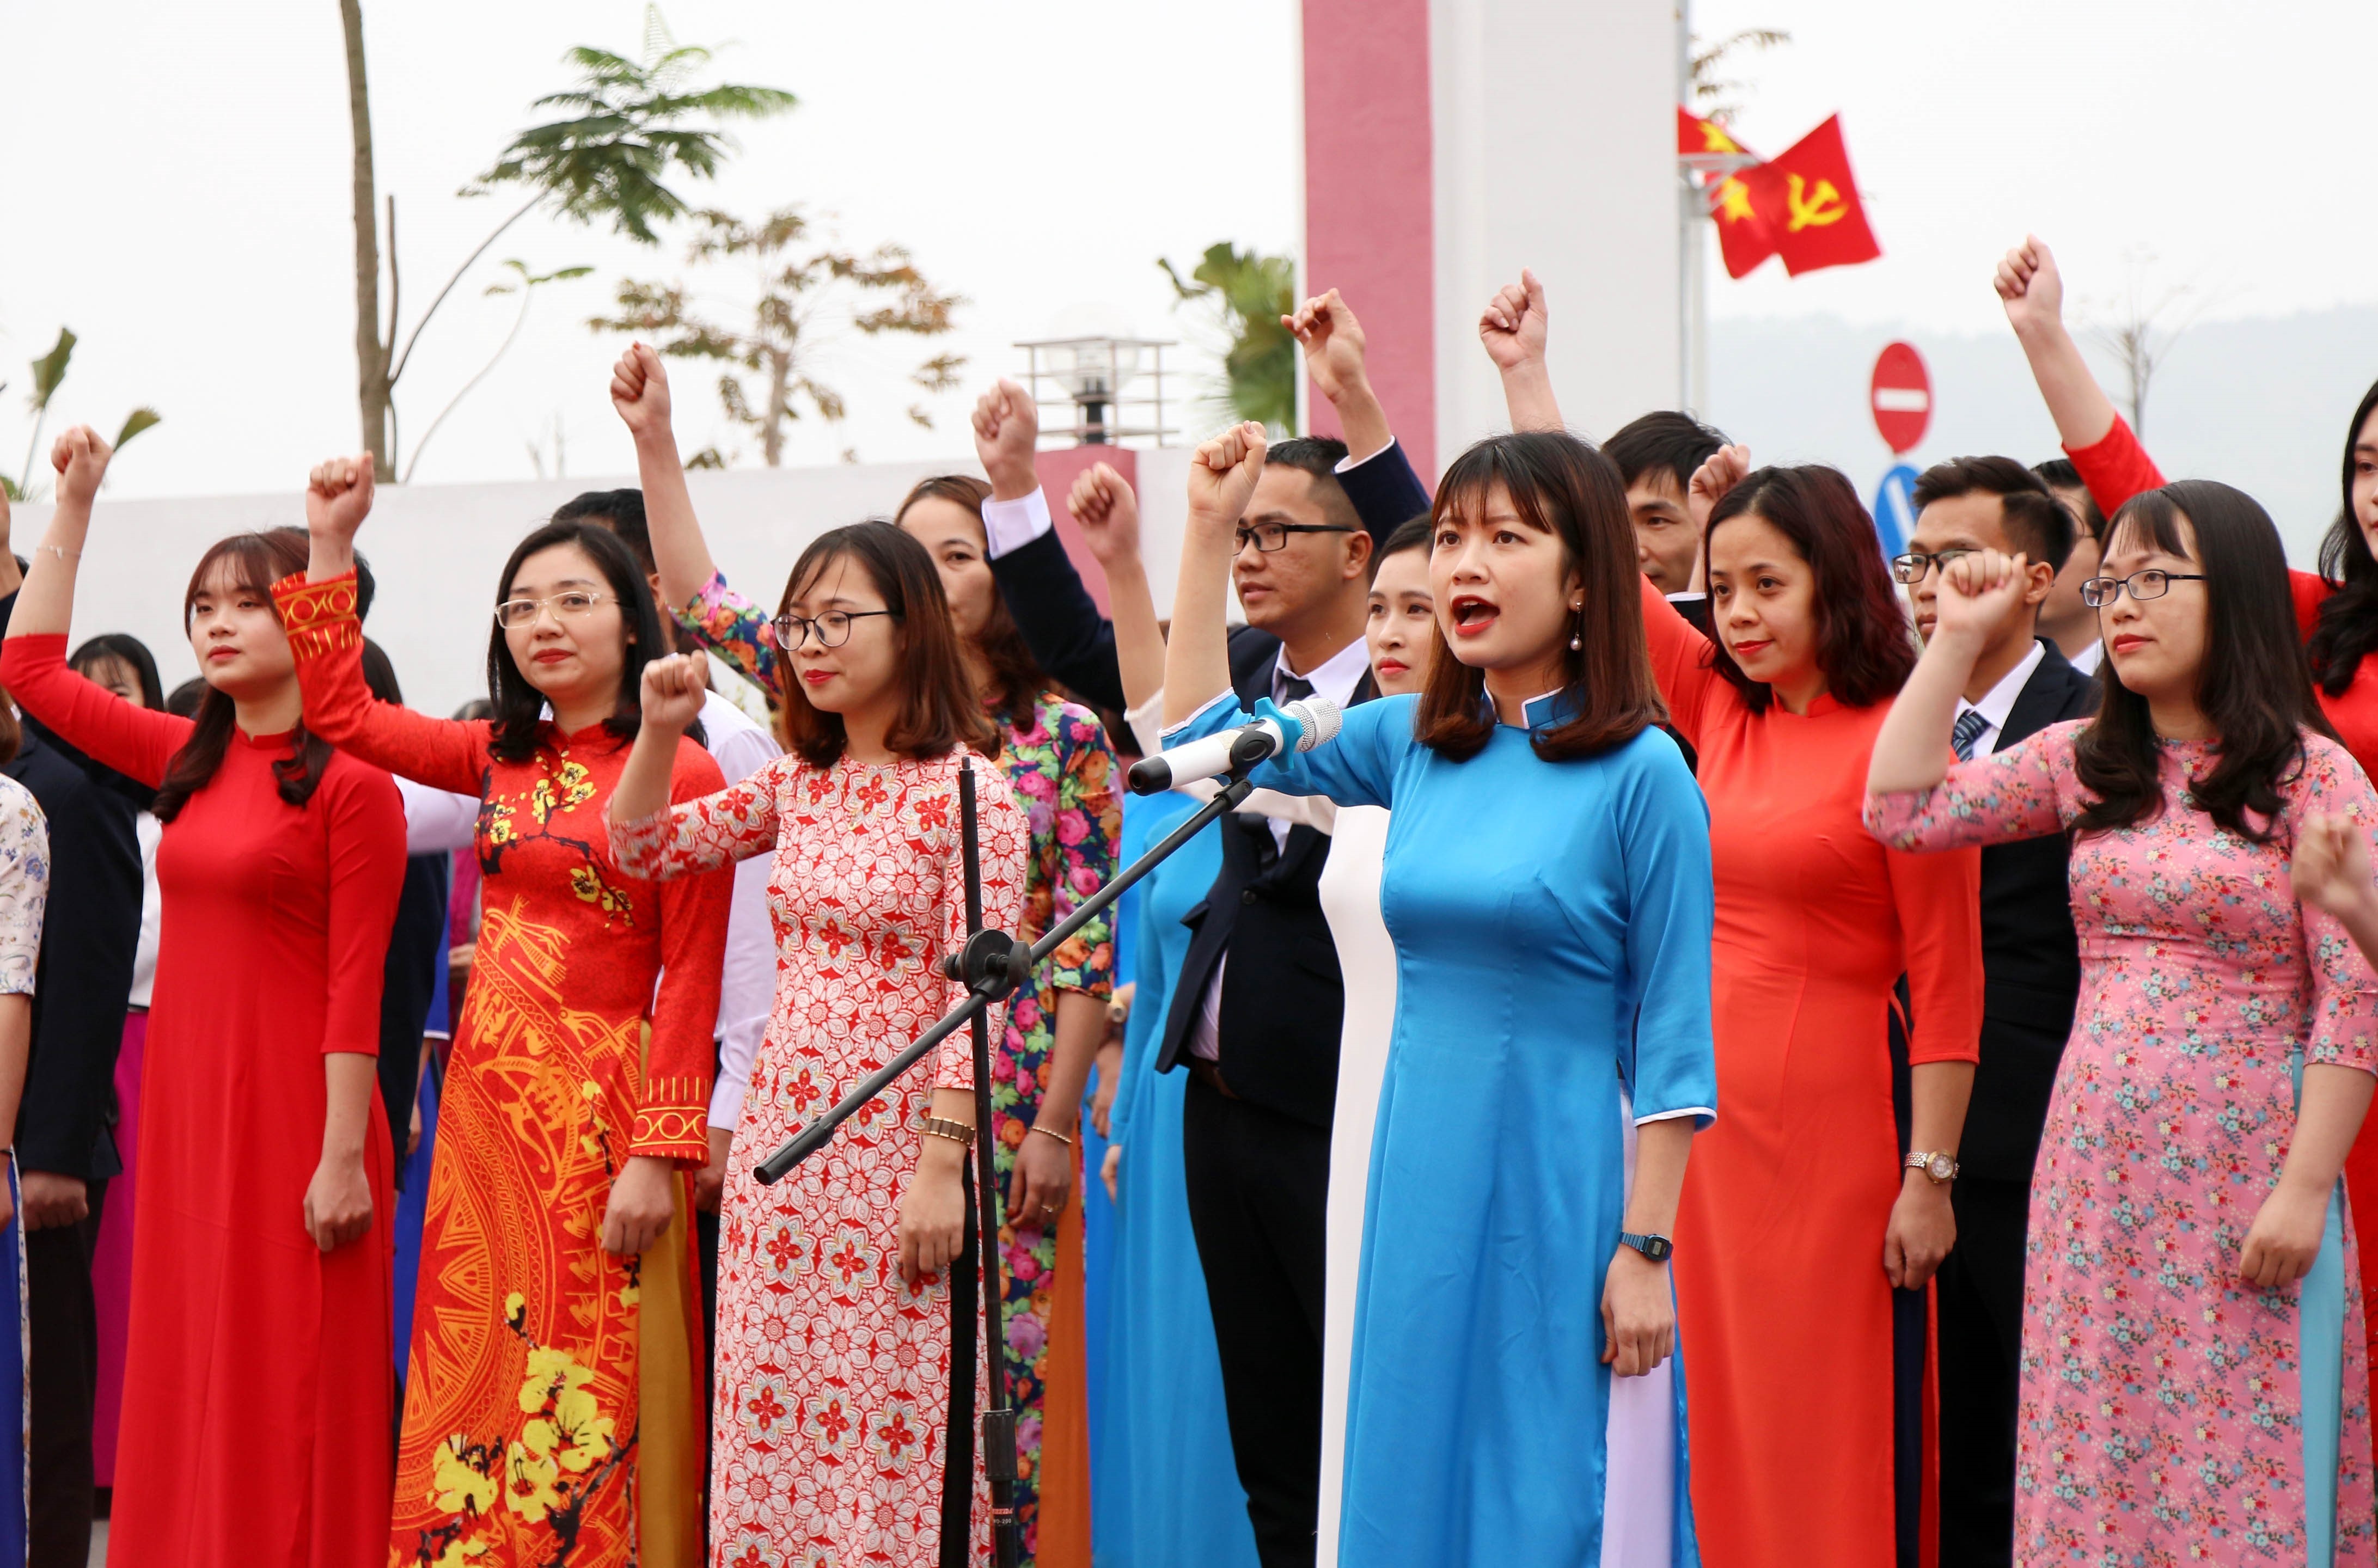 Lãnh tụ Nguyễn Ái Quốc với việc đào tạo, bồi dưỡng cán bộ trẻ nhằm chuẩn bị thành lập Đảng Cộng sản Việt Nam: Giá trị lý luận và thực tiễn cho giai đoạn hiện nay